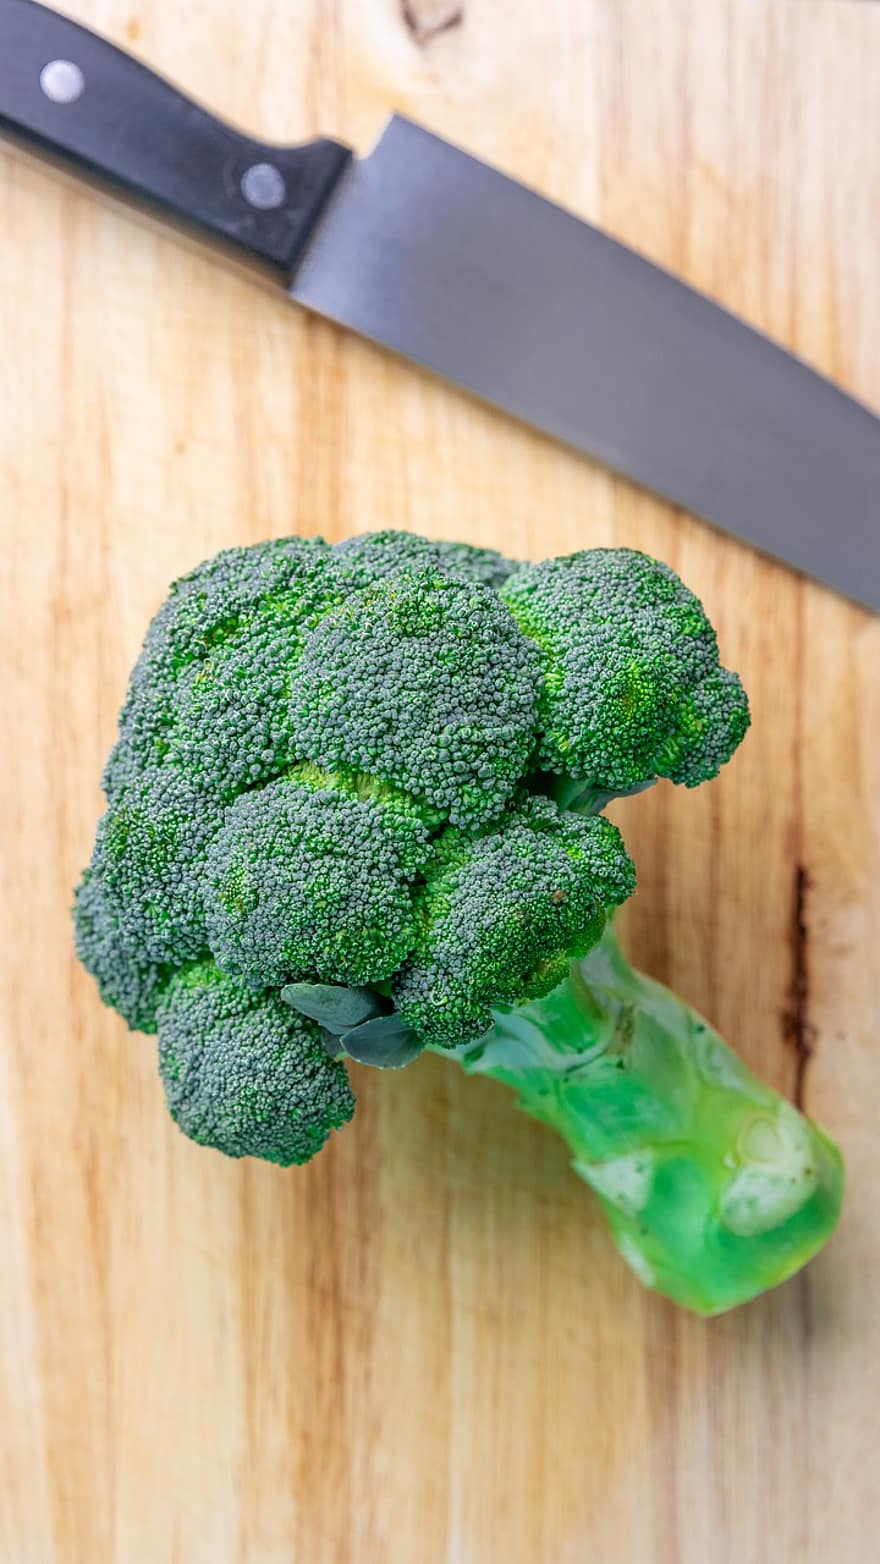 Brokoliai, daržovių, sveikas, neapdorotas, ekologiškas, vegetaras, mityba